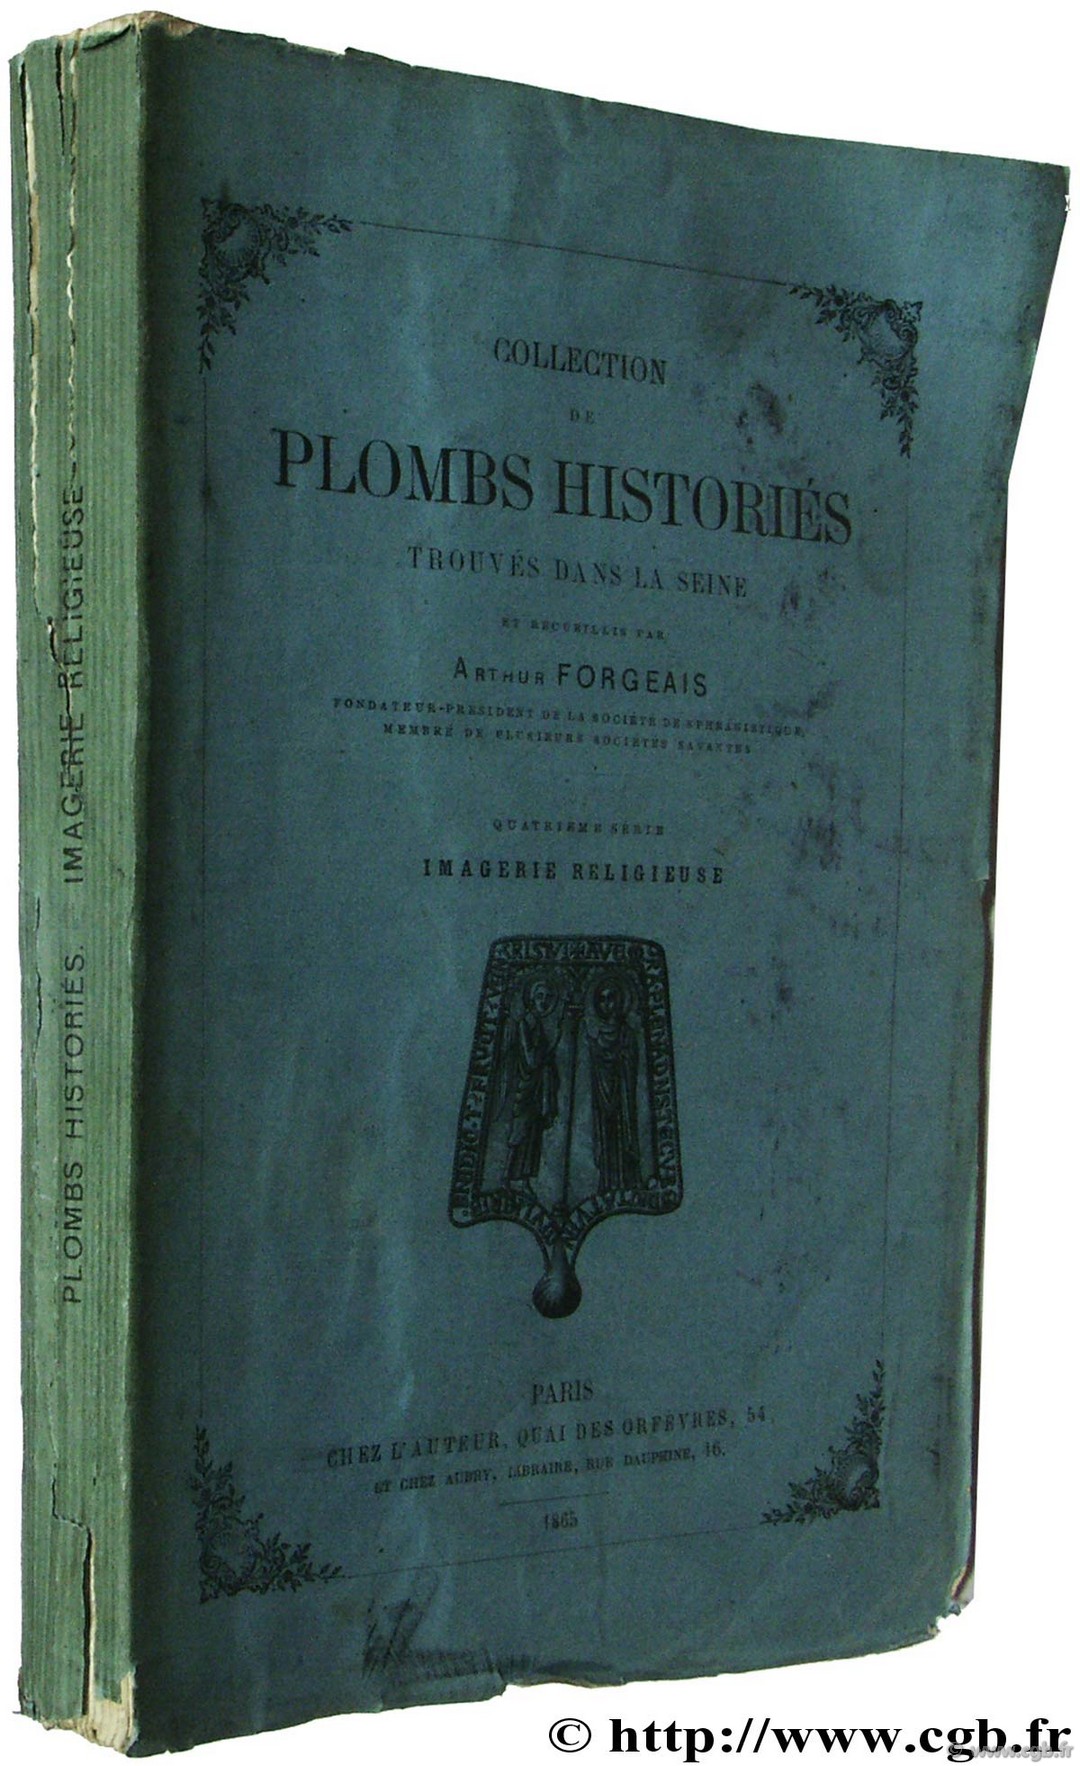 Collection de plombs historiés trouvés dans la Seine FORGEAIS A.